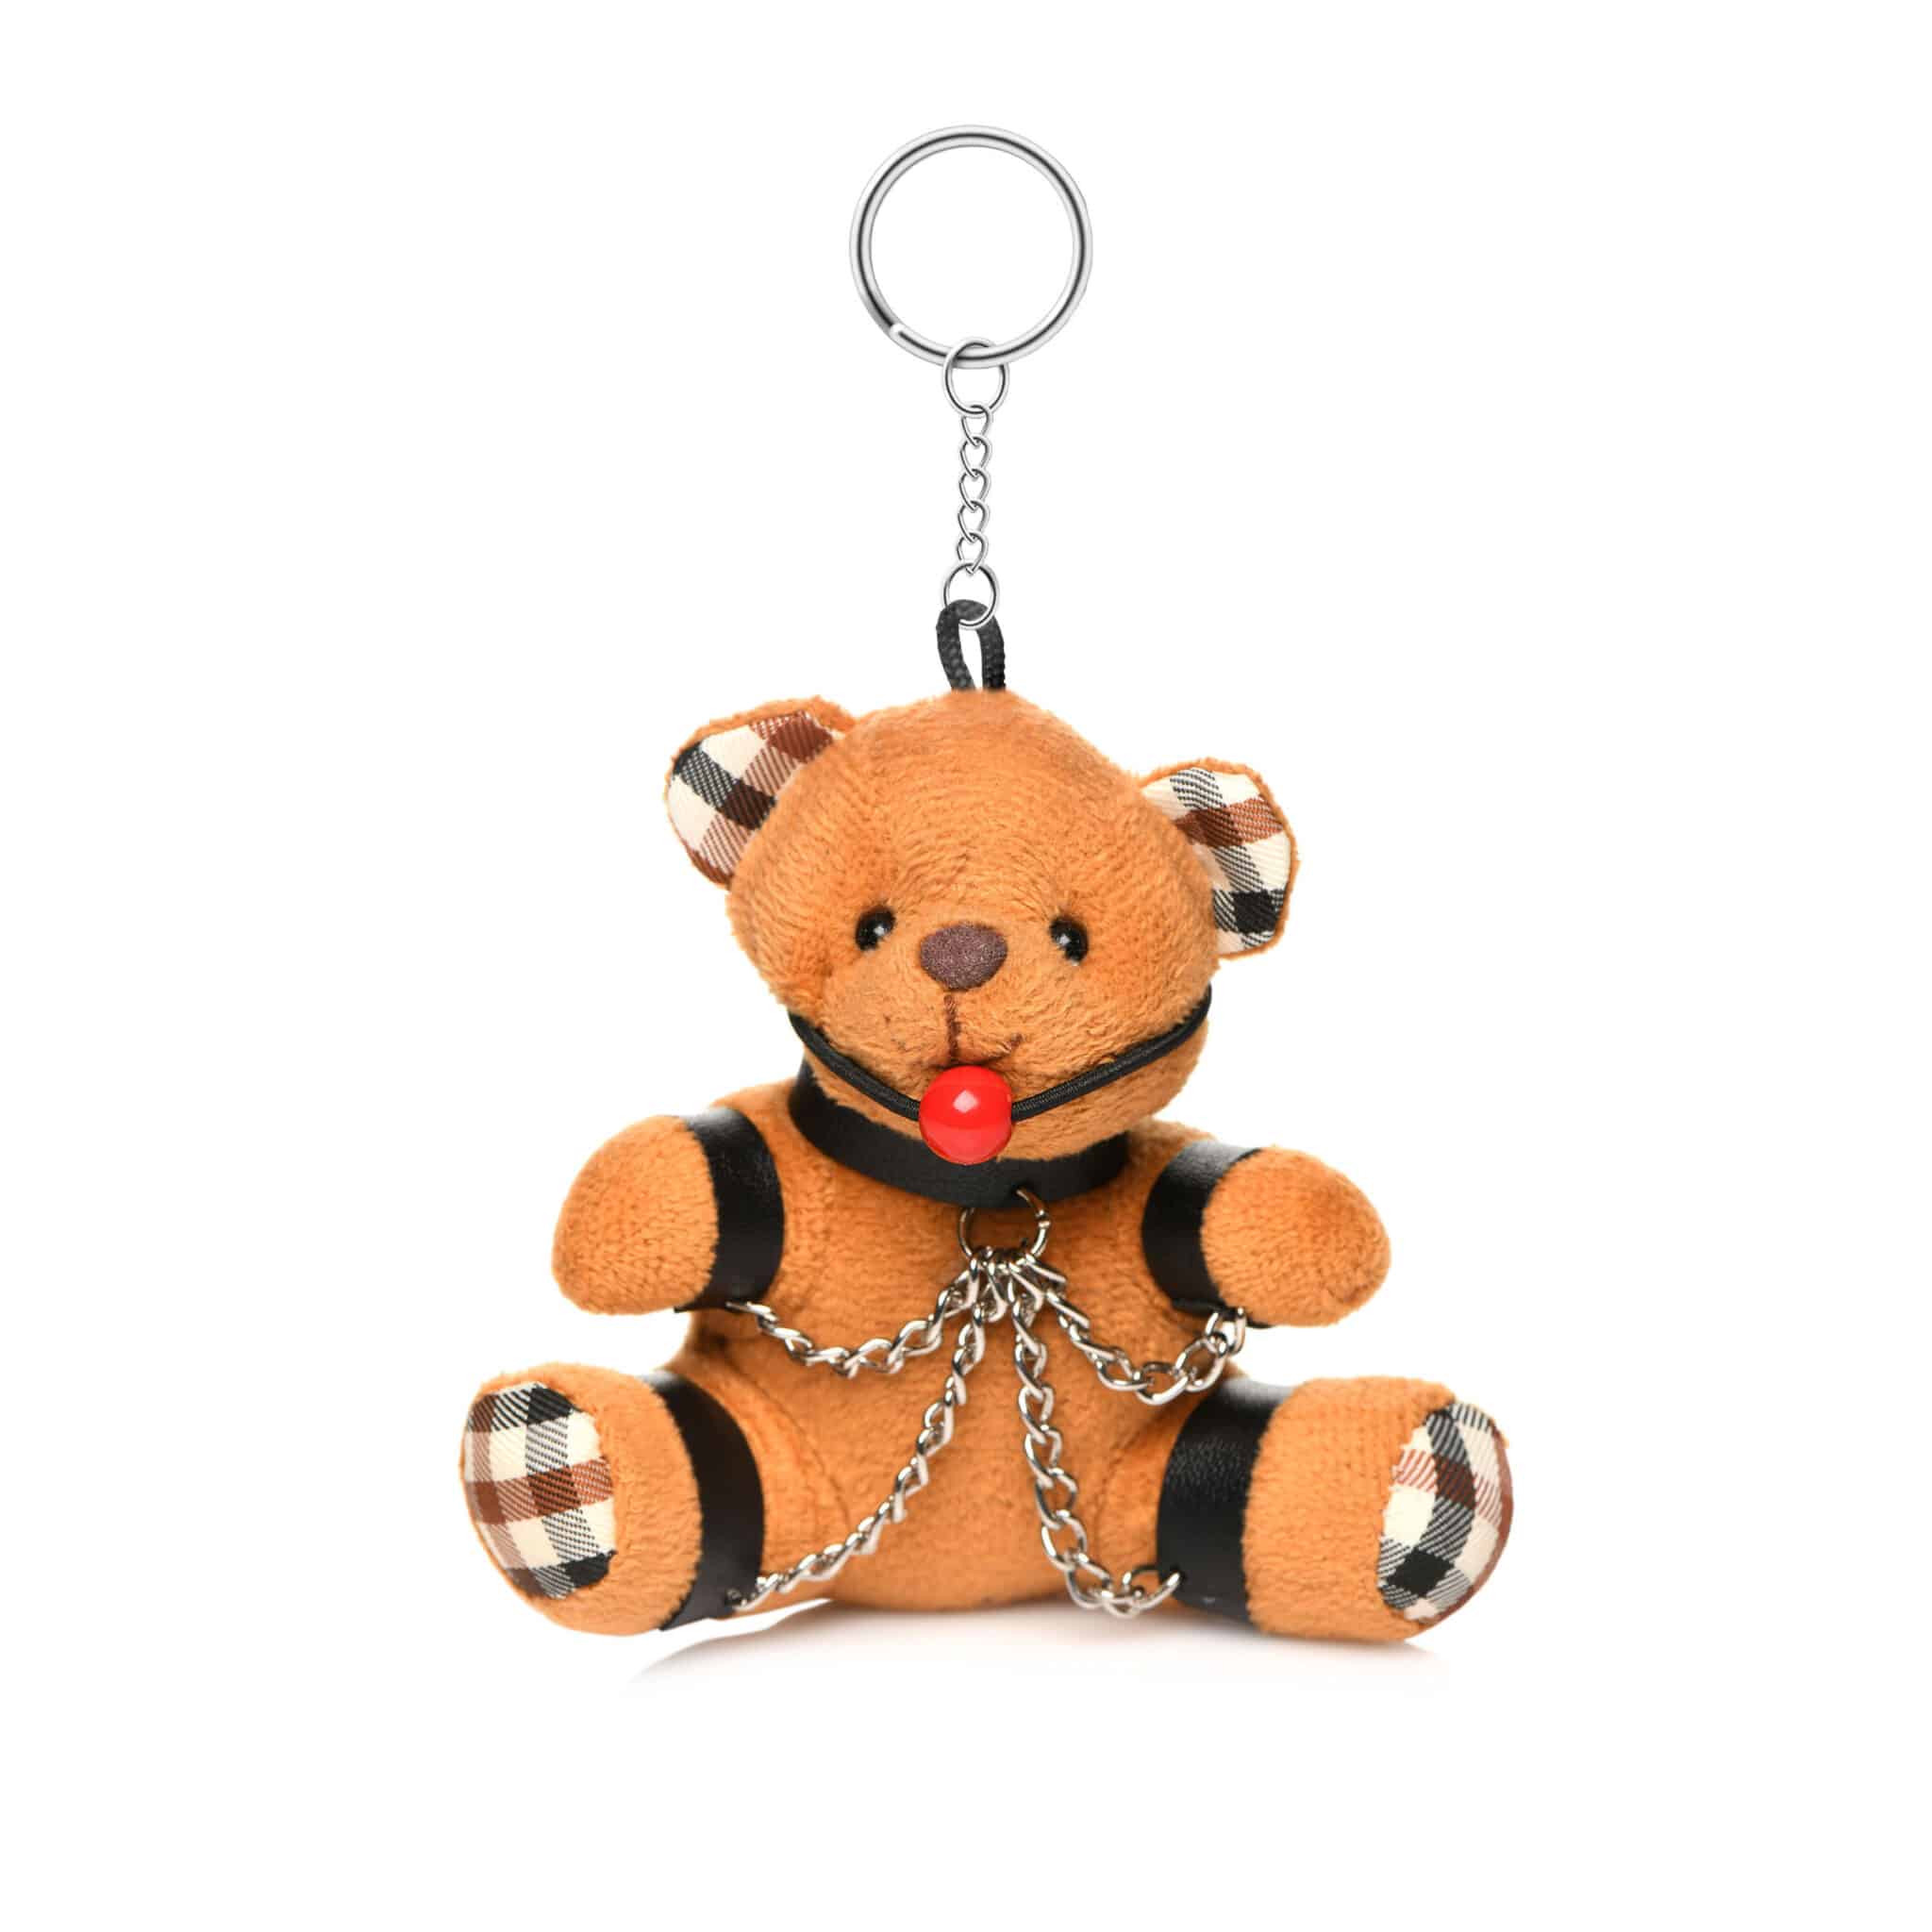 Gagged Teddy Bear Keychain-7